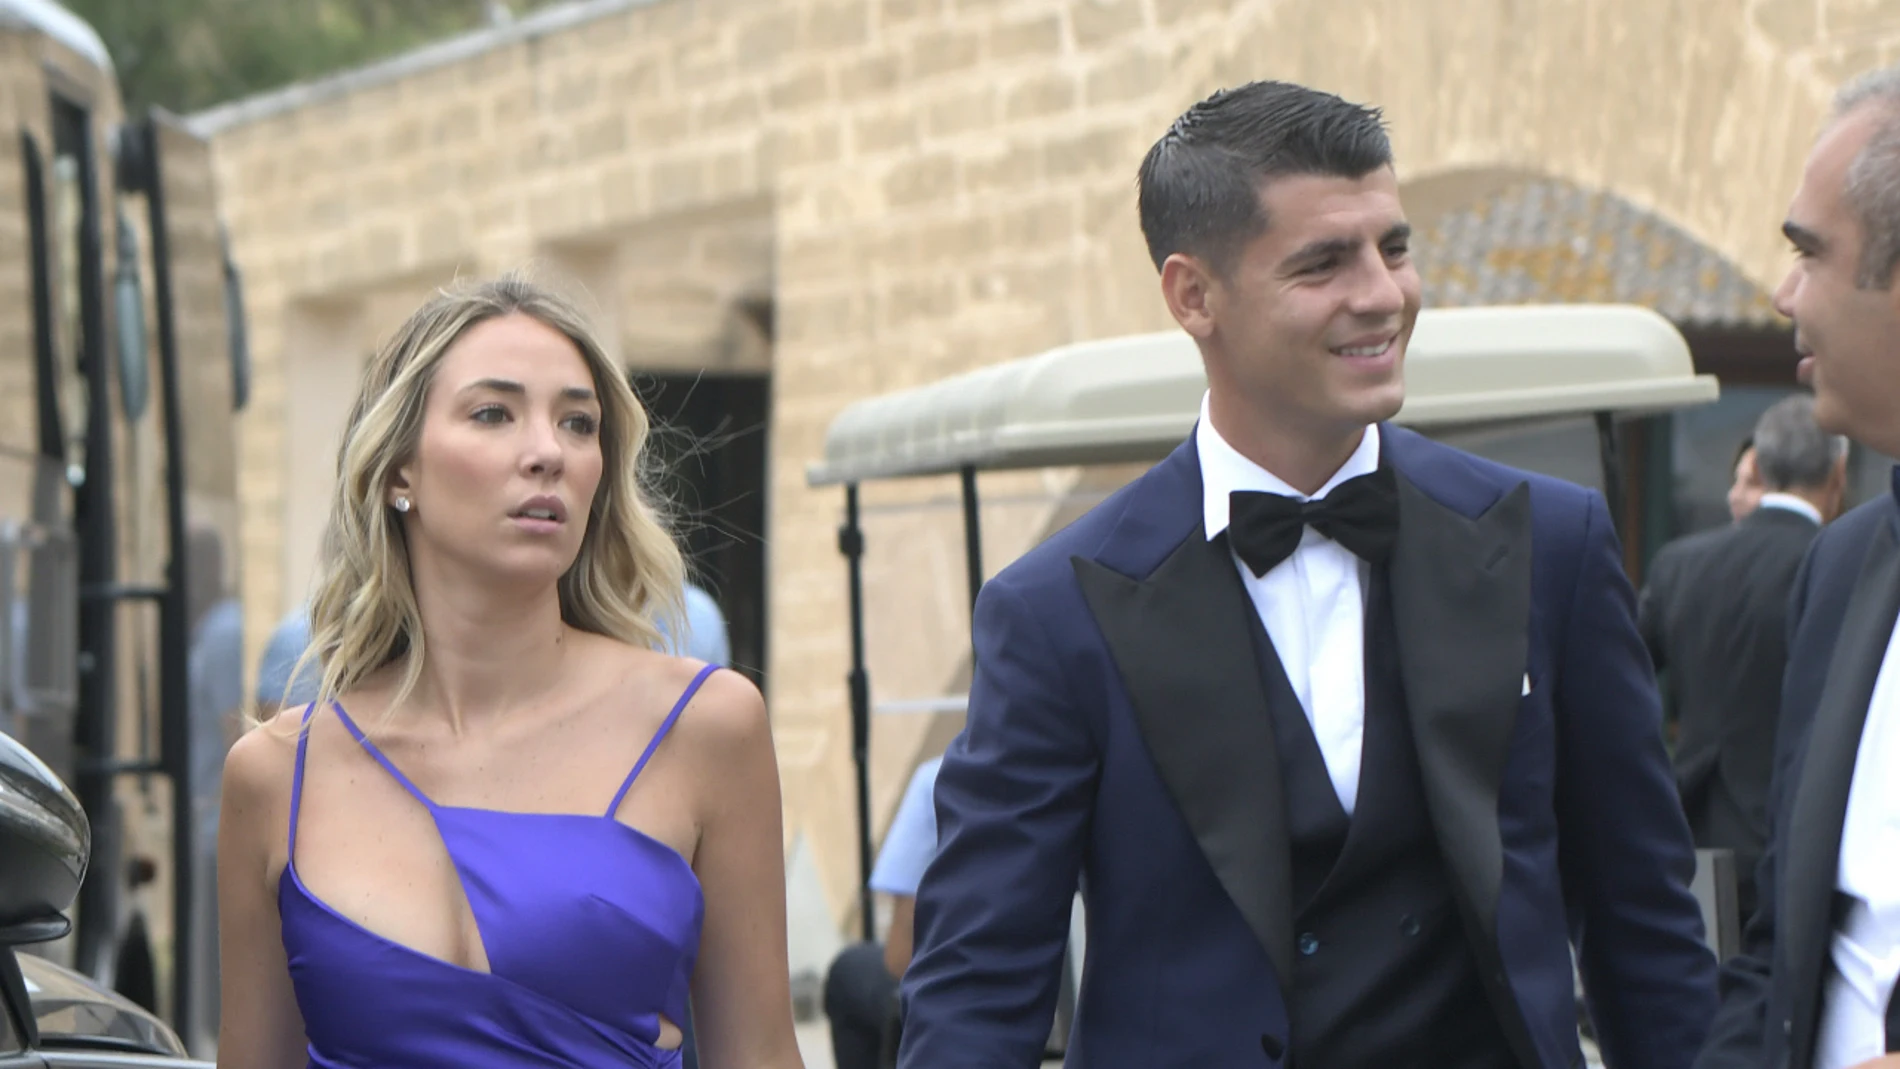 Los mejores looks de los invitados a la boda de ensueño de Paddy Noarbe y Marcos Llorente